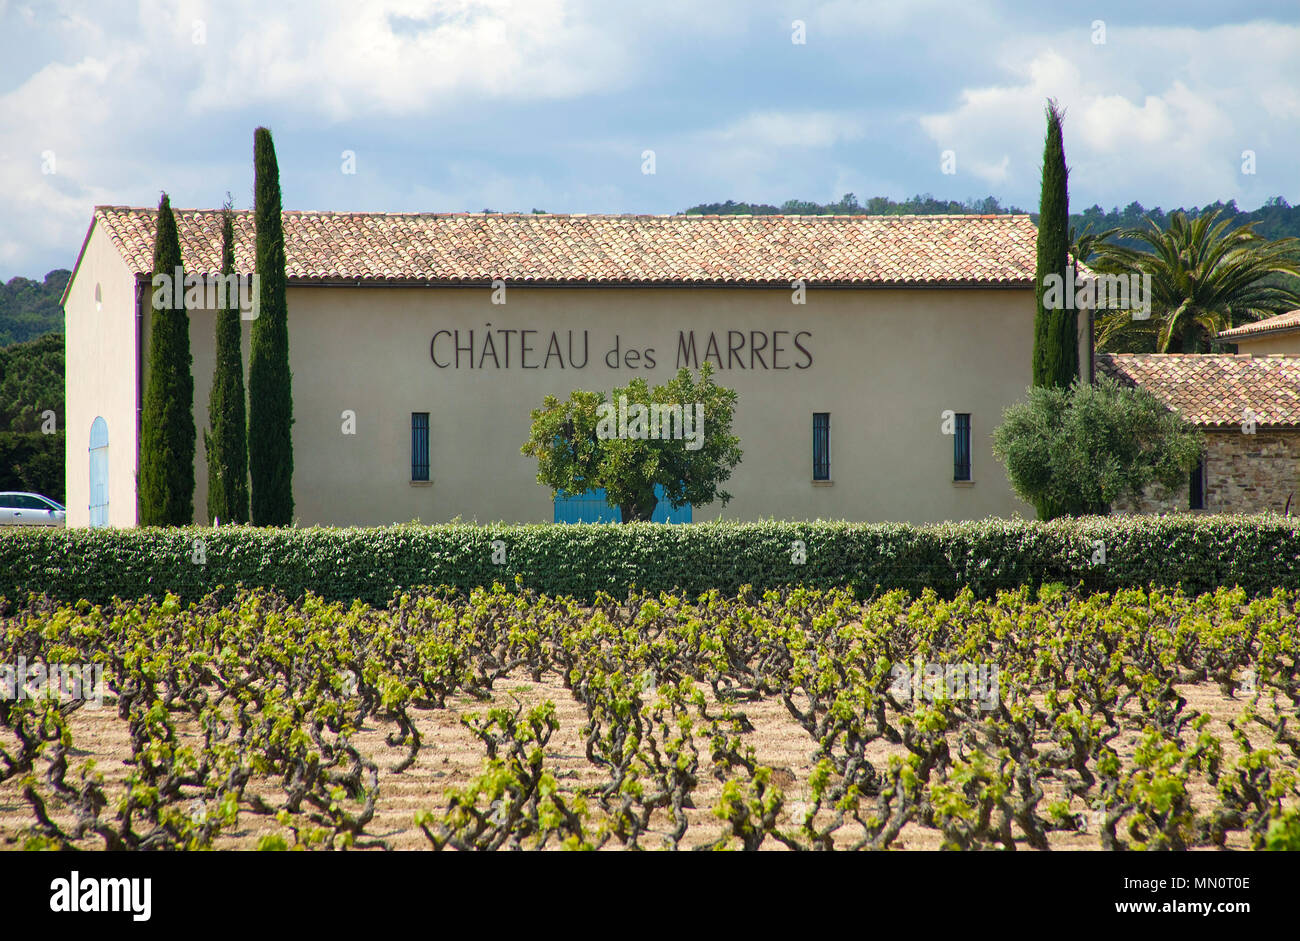 Vineyard 'Chateau des Marres' at Ramatuelle, Cote d'Azur, Département Var, Provence-Alpes-Côte d’Azur, South France, France, Europe Stock Photo